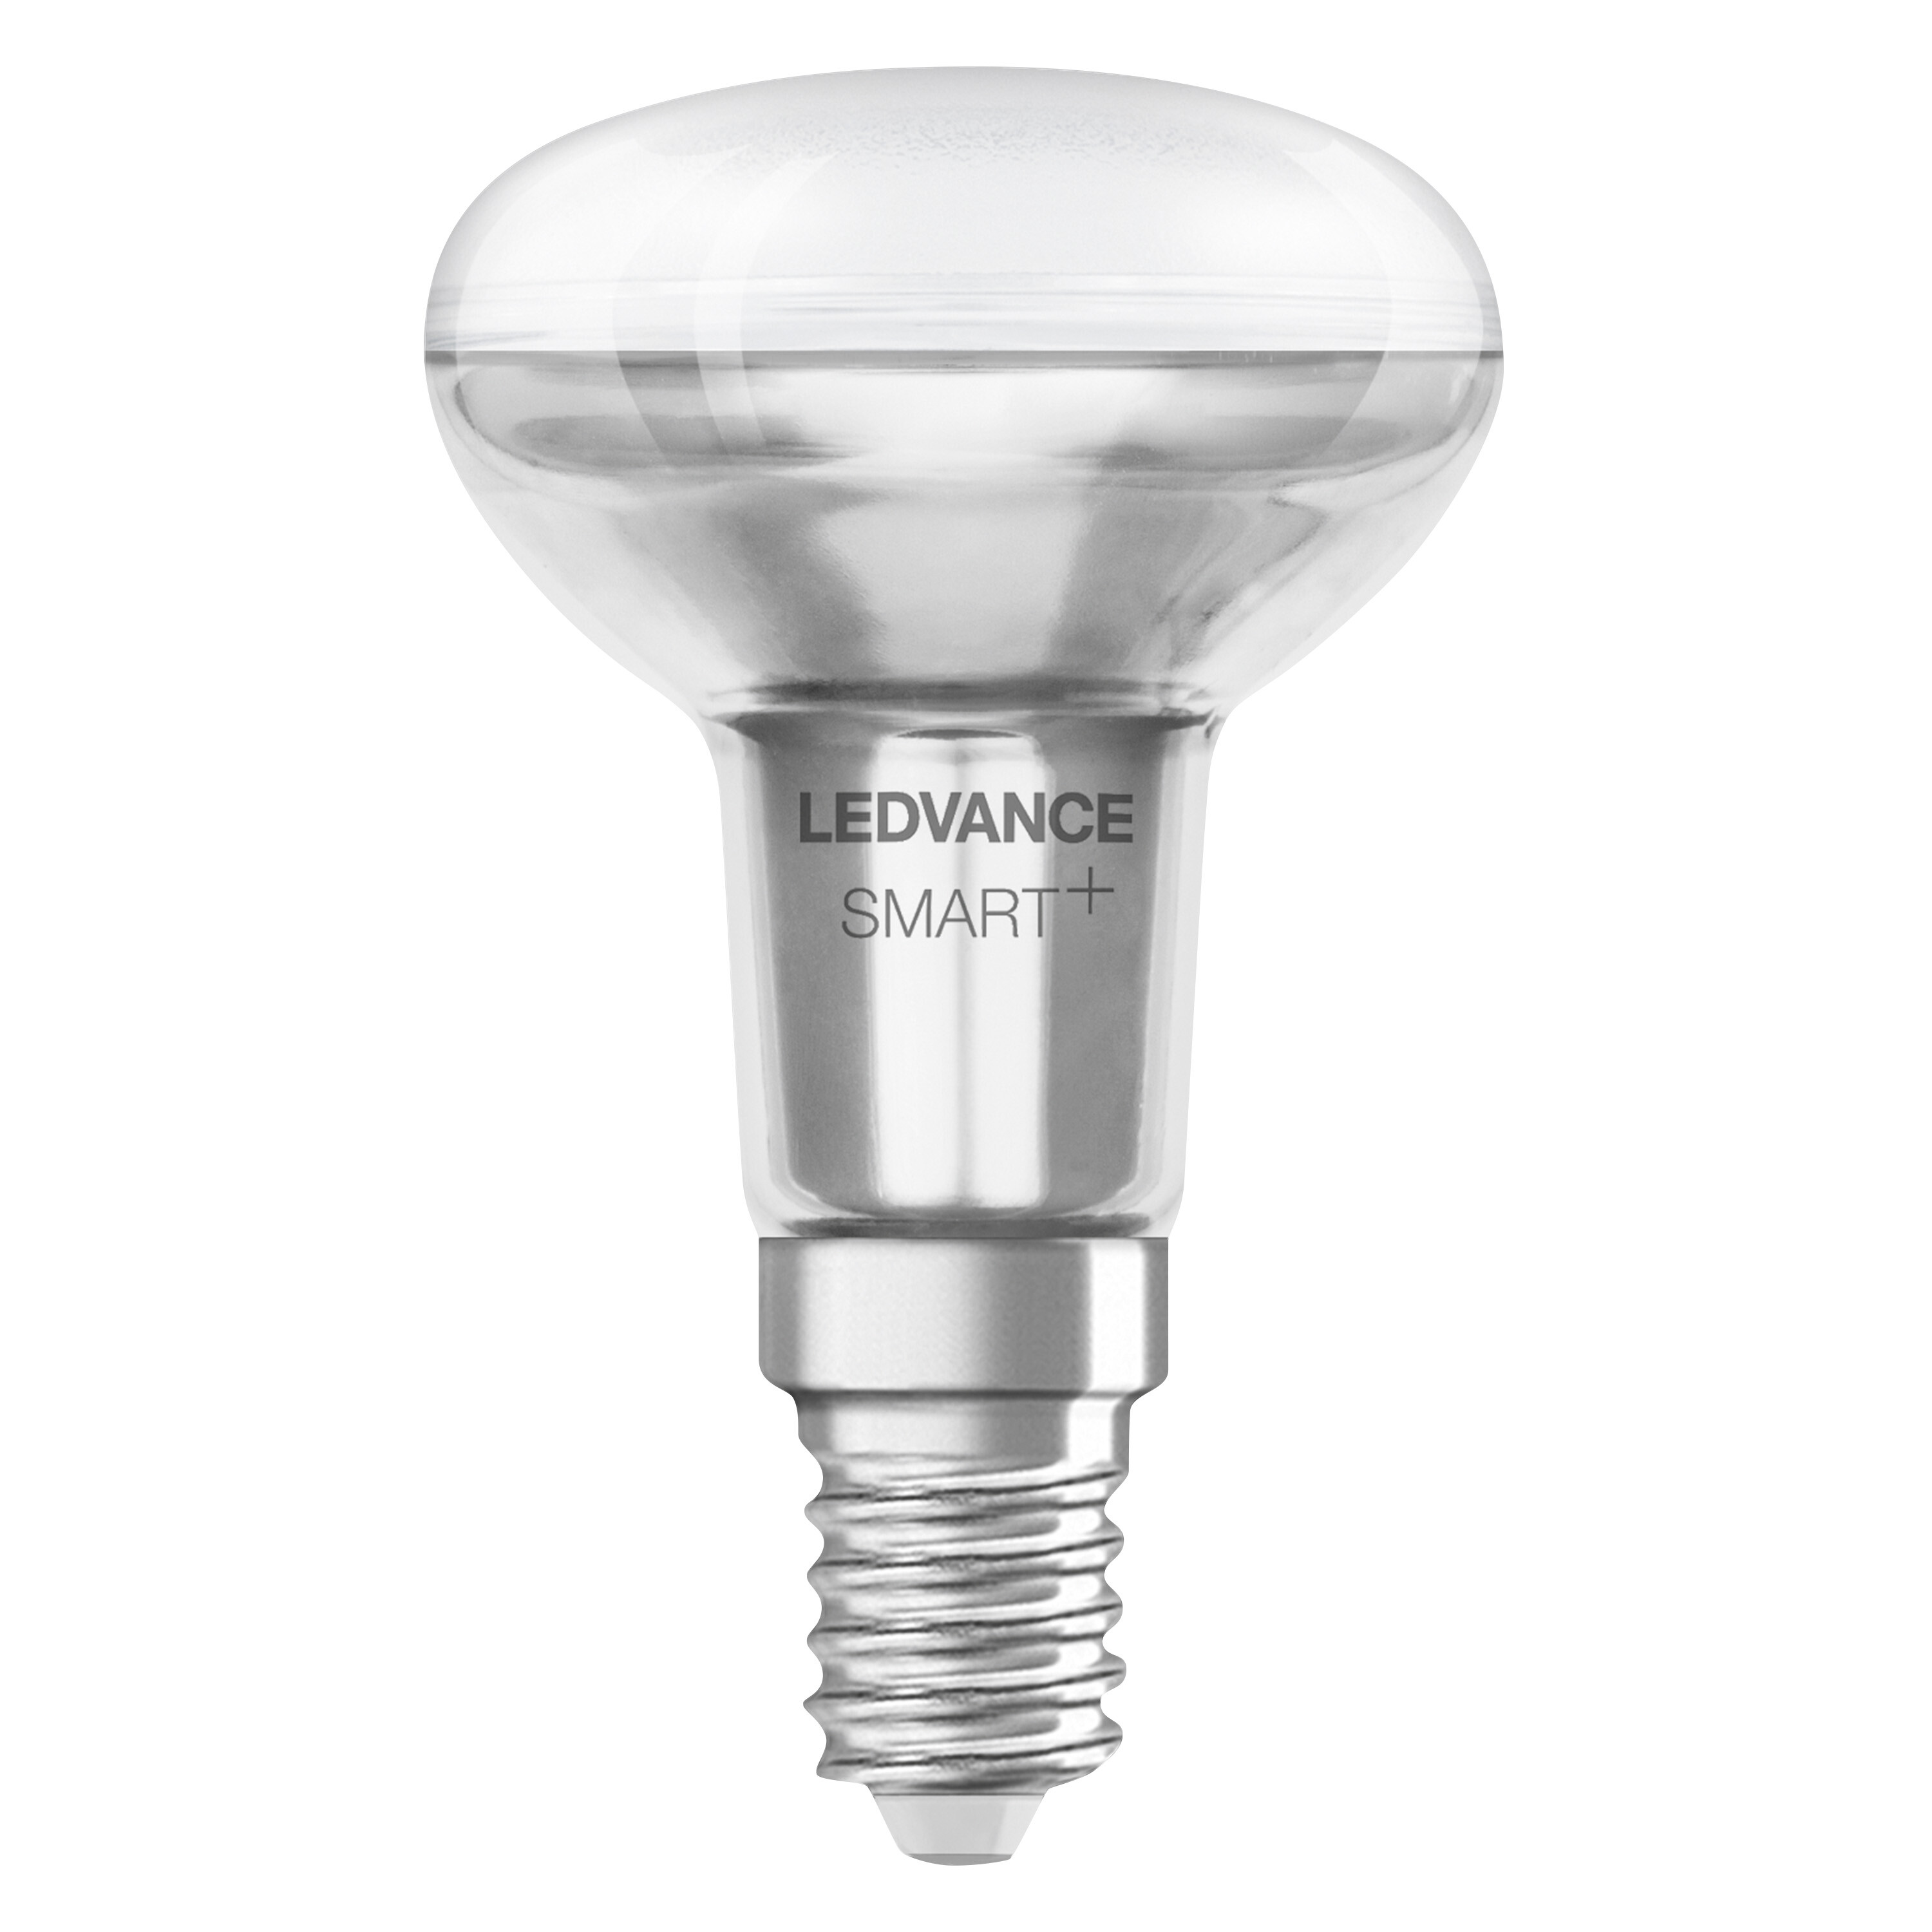 LEDVANCE SMART+ 2700…6500 E14 SPOT Lichtfarbe 40 R50 3W Lampe Tunable White änderbar LED CONCENTRA